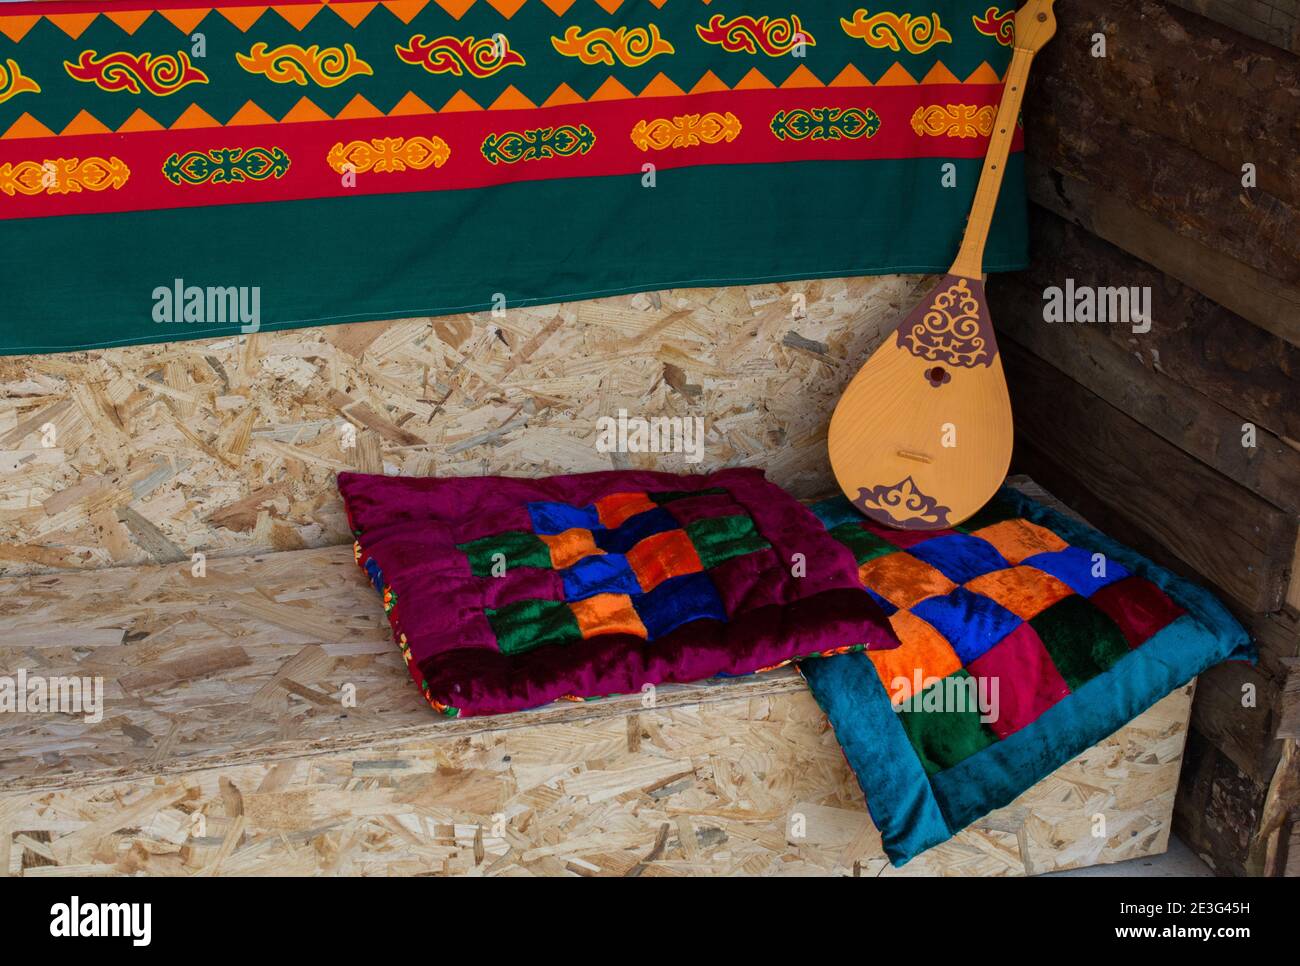 Il classico strumento a corda turco Saz, baglama Foto Stock